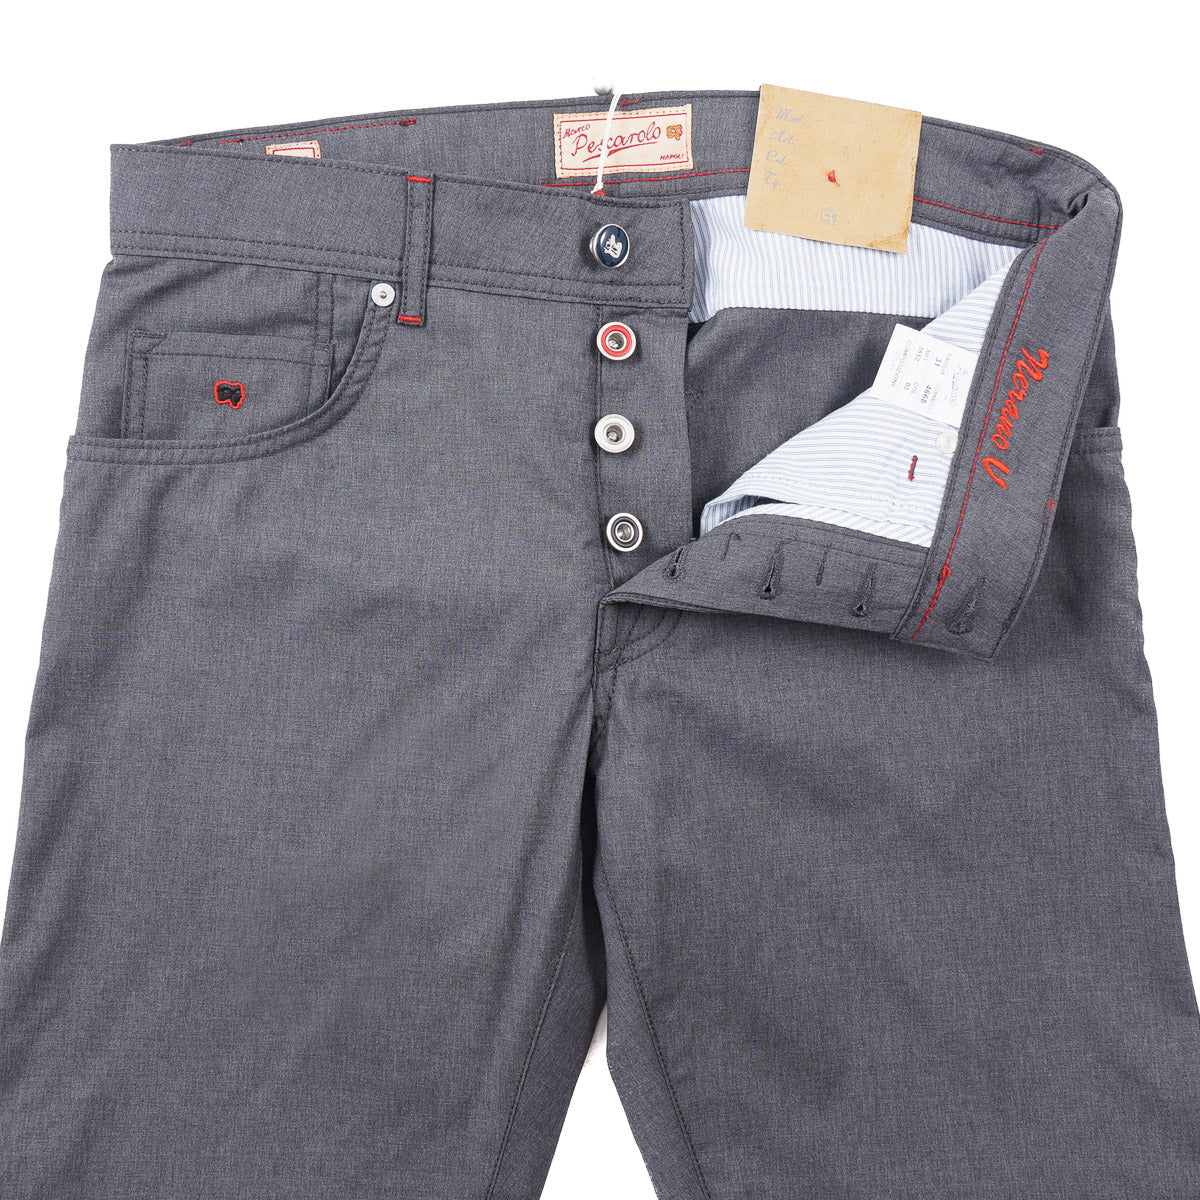 Marco Pescarolo Lightweight Wool Jeans - Top Shelf Apparel